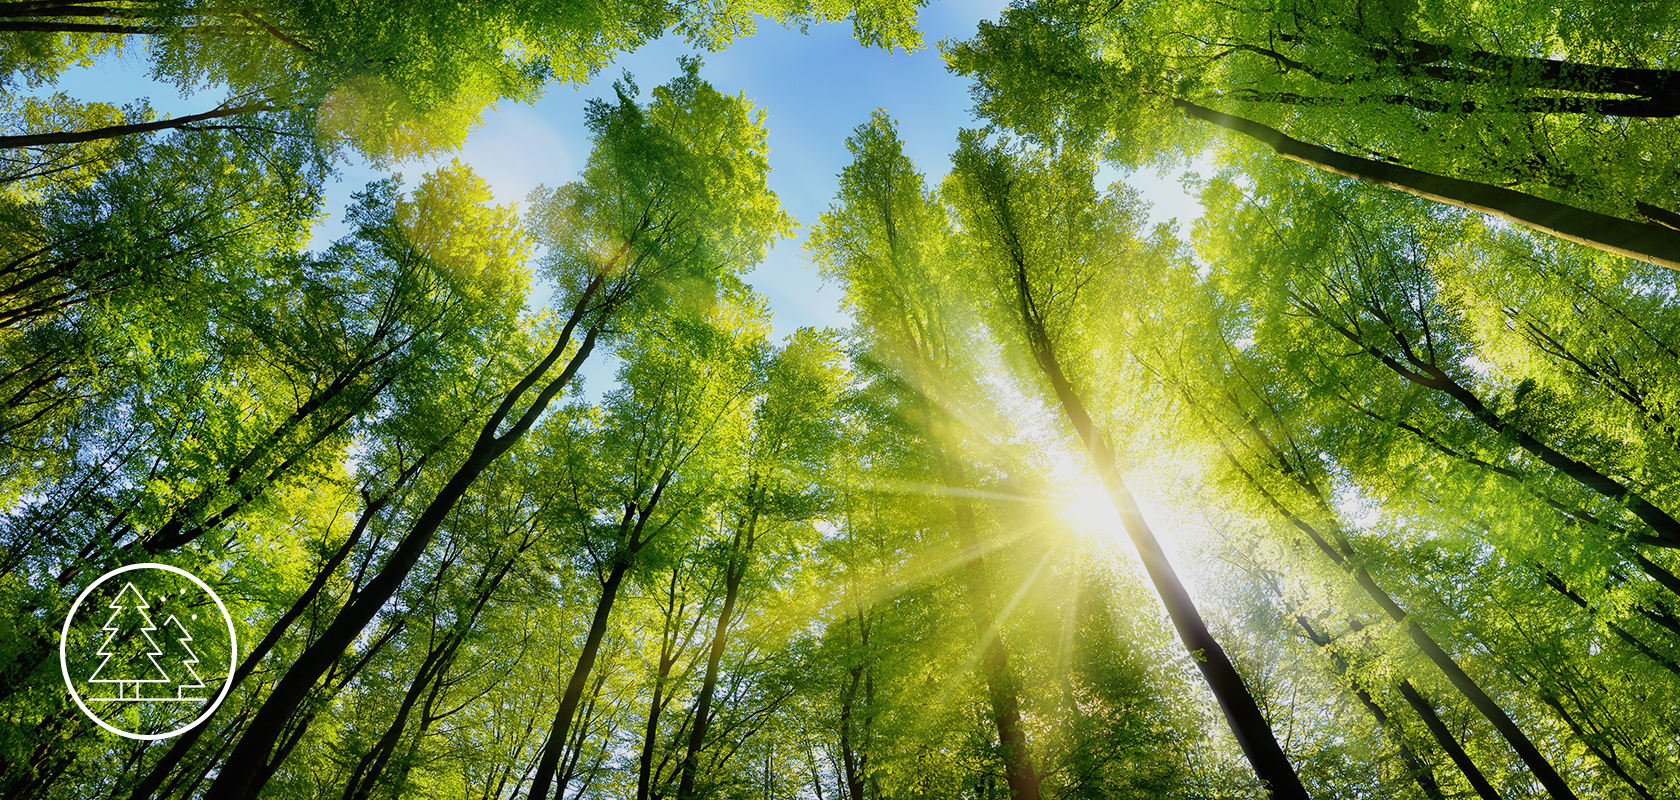 Une canopée de forêt vibrante avec la lumière du soleil qui filtre à travers les feuilles, mettant en valeur la verdure luxuriante et créant un arrière-plan naturel et serein.